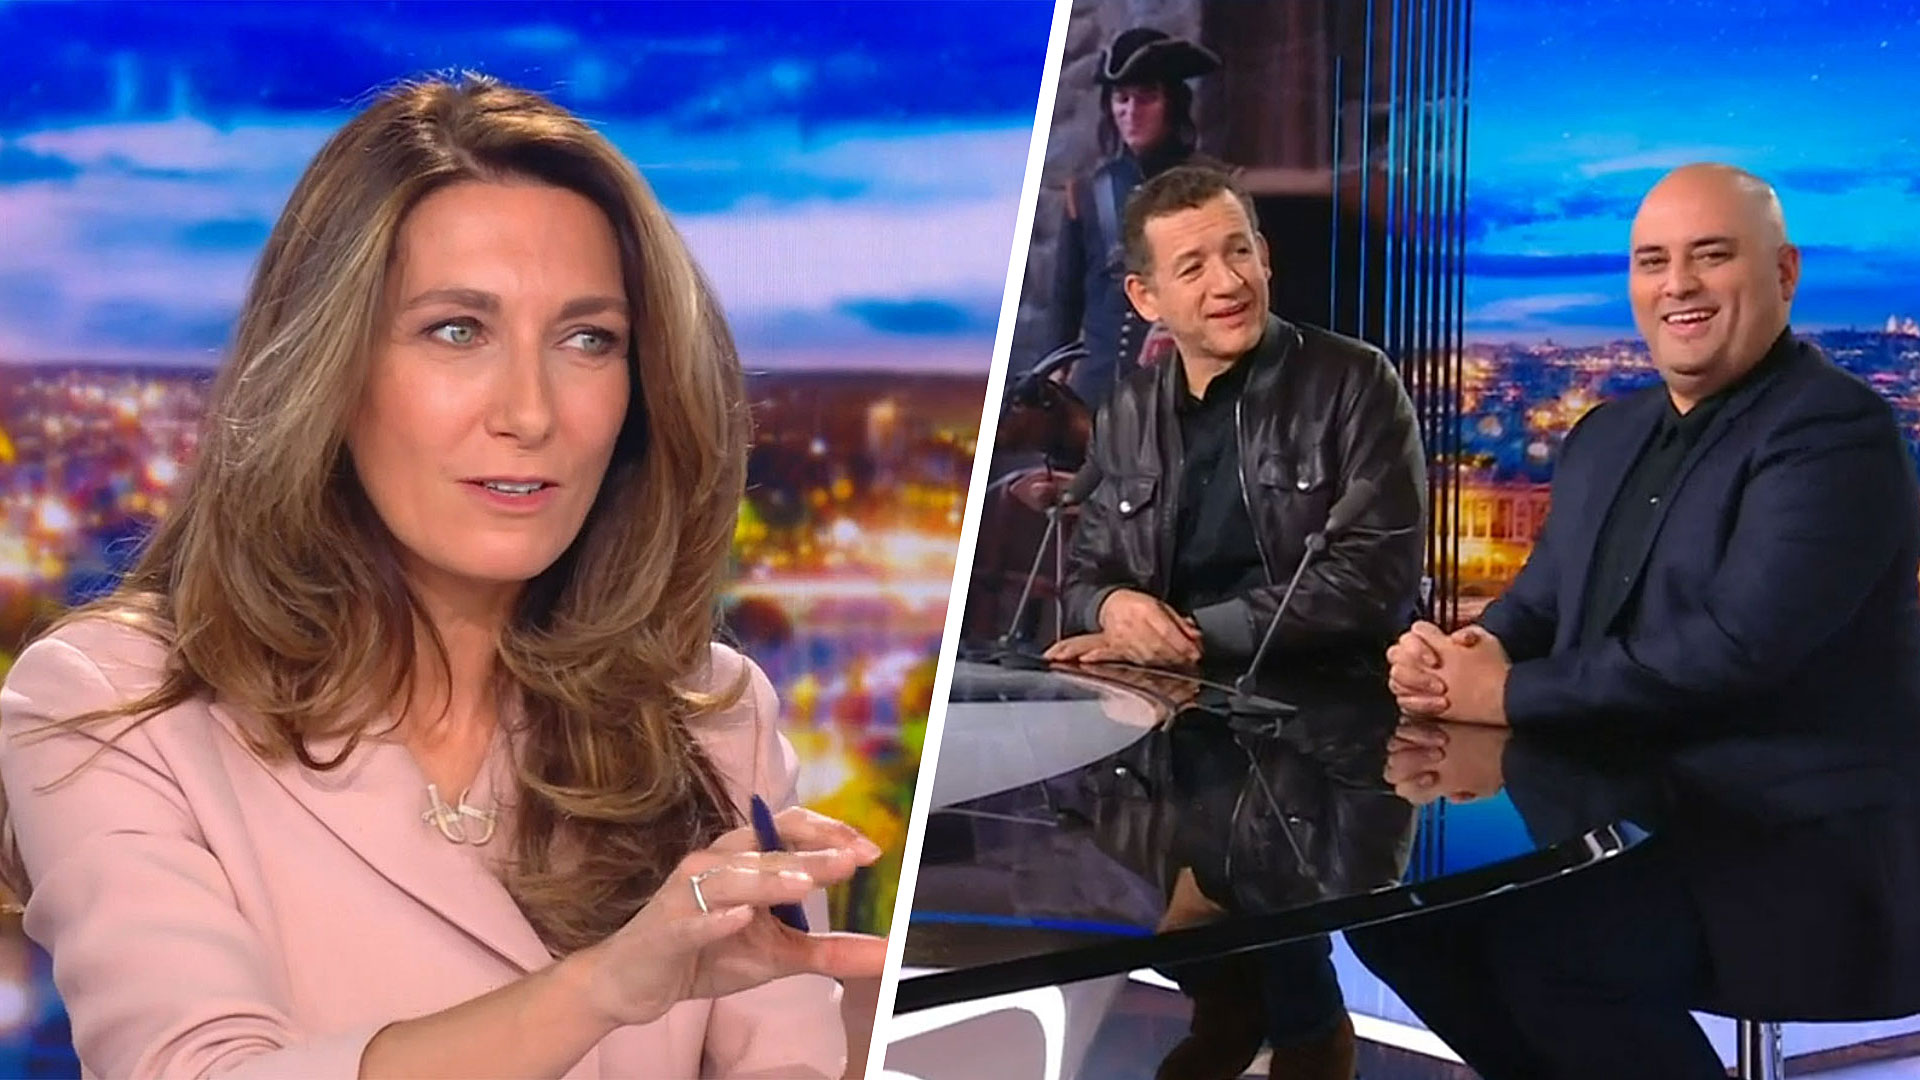 Taisez-vous : Anne-Claire Coudray recadre Dany Boon et Jérôme Commandeur dissipés pendant le JT de TF1